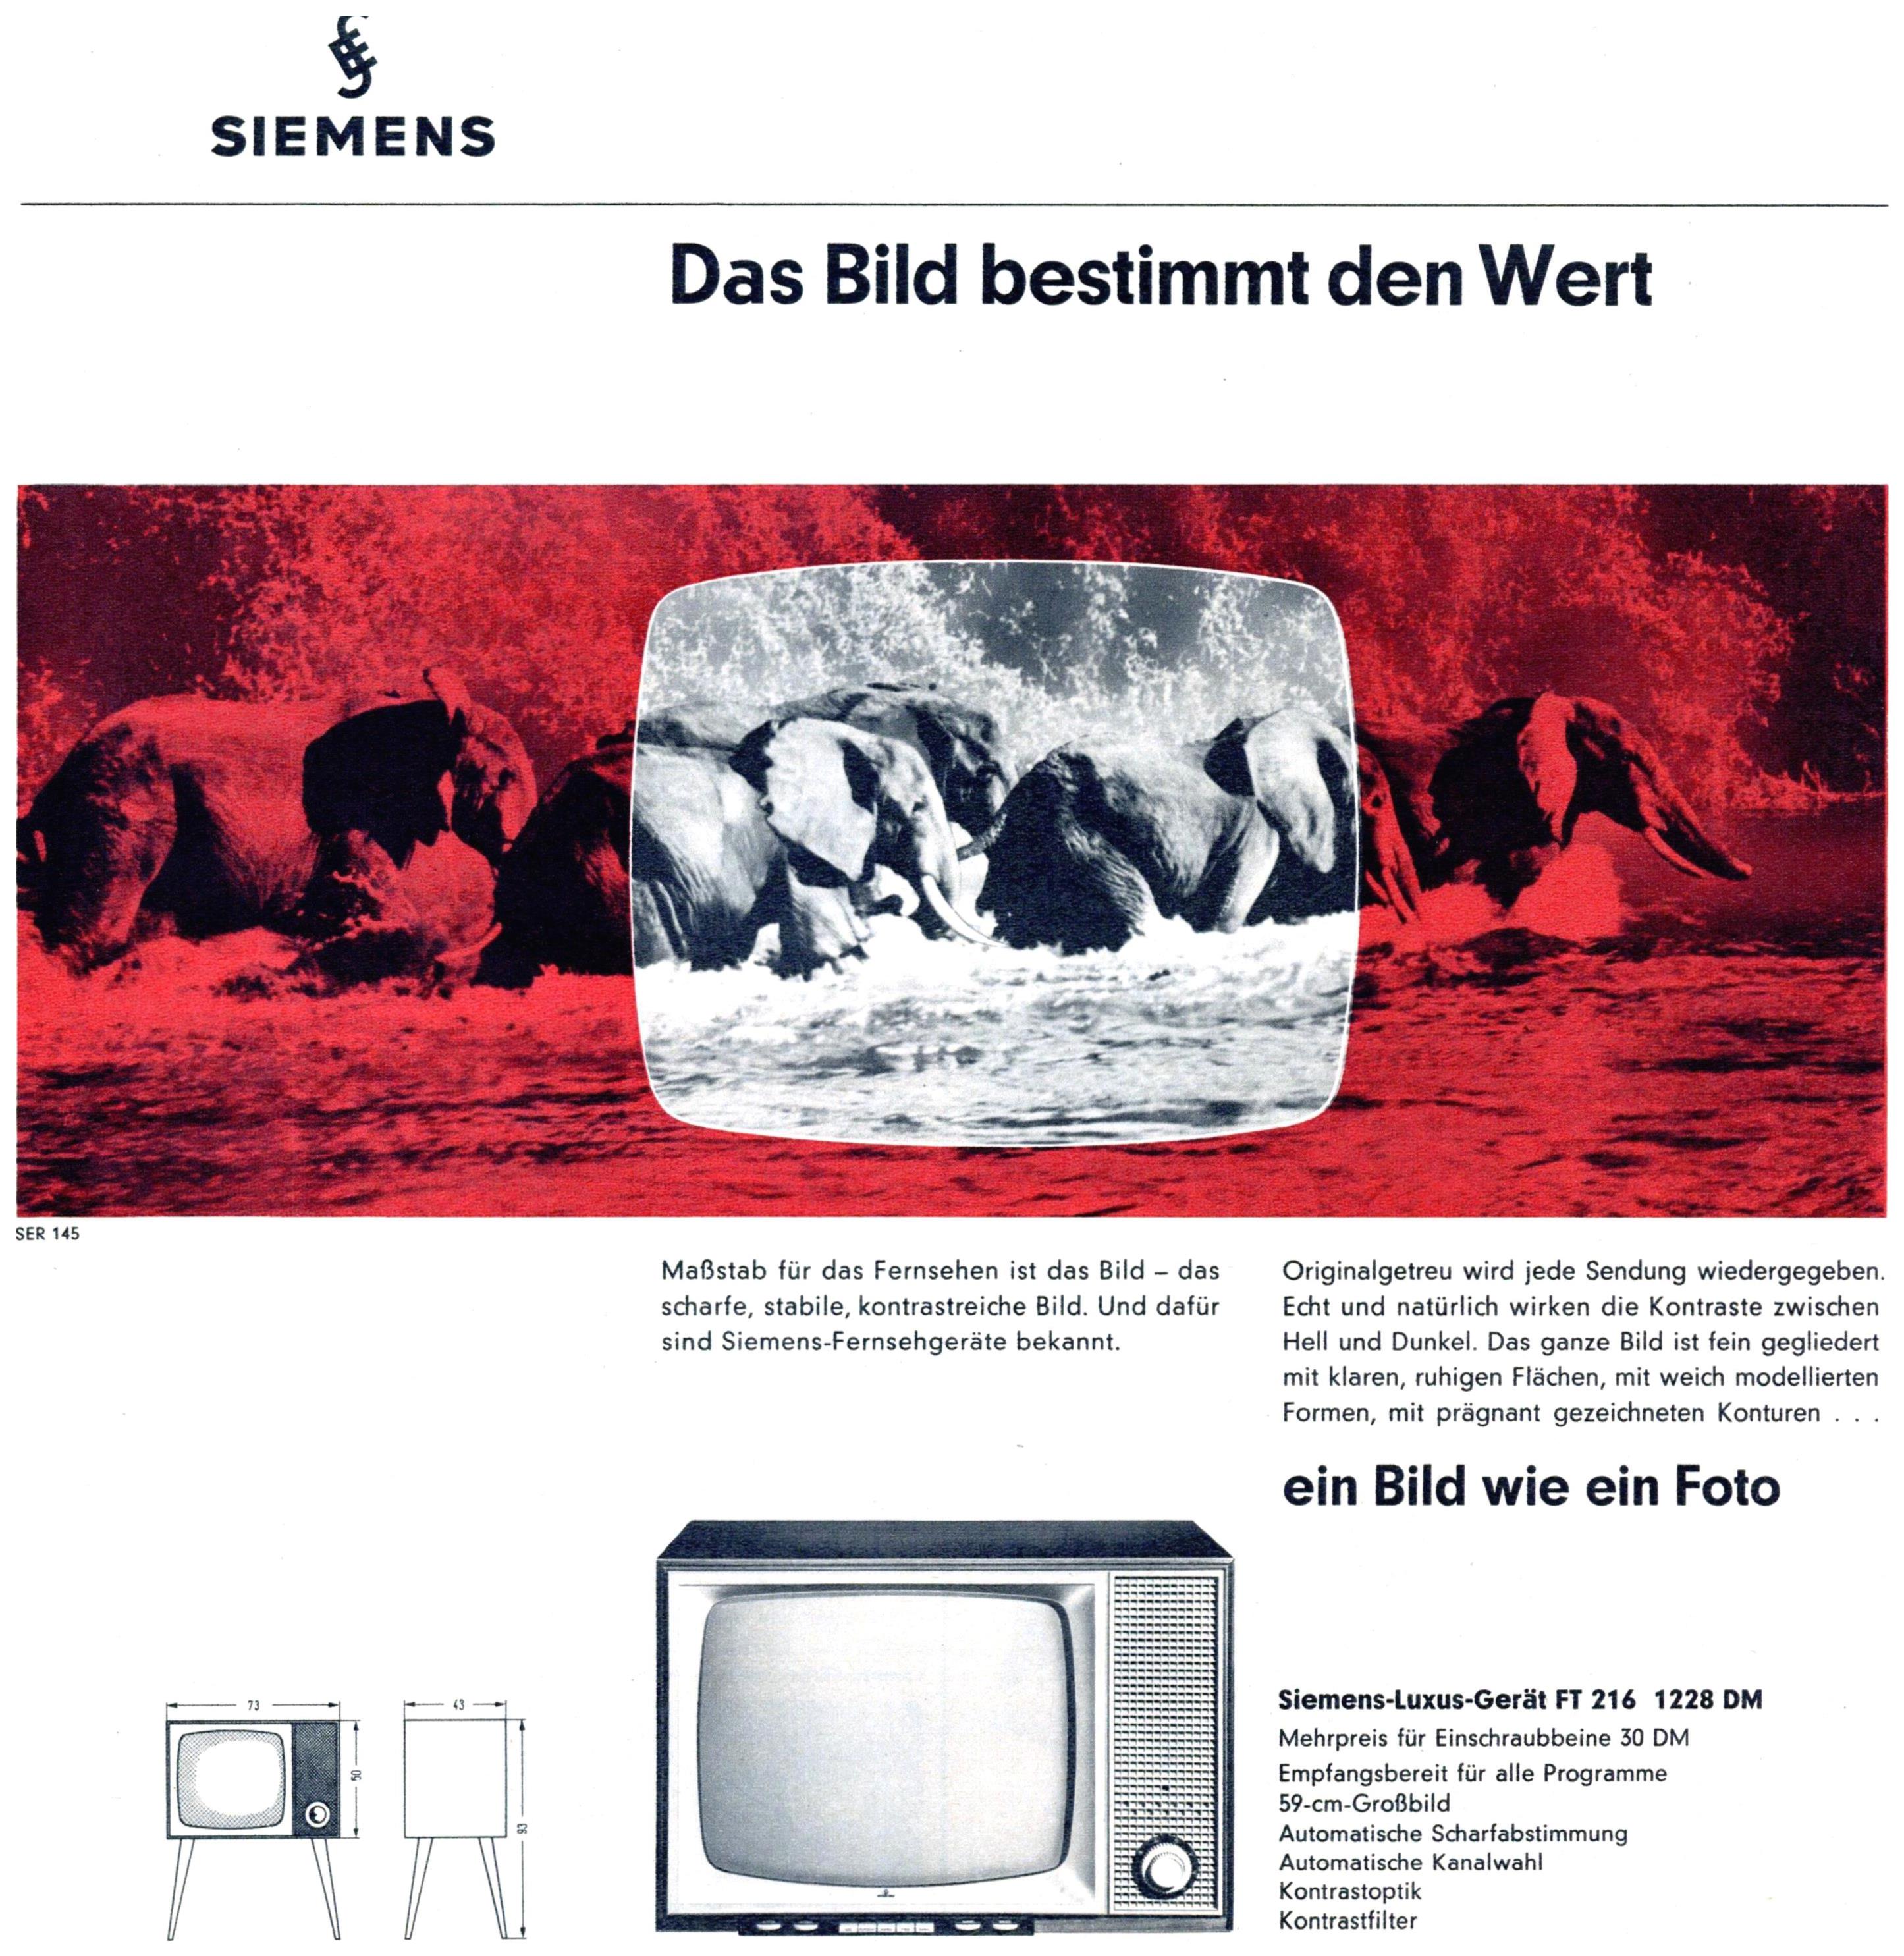 Siemens 1961 02.jpg